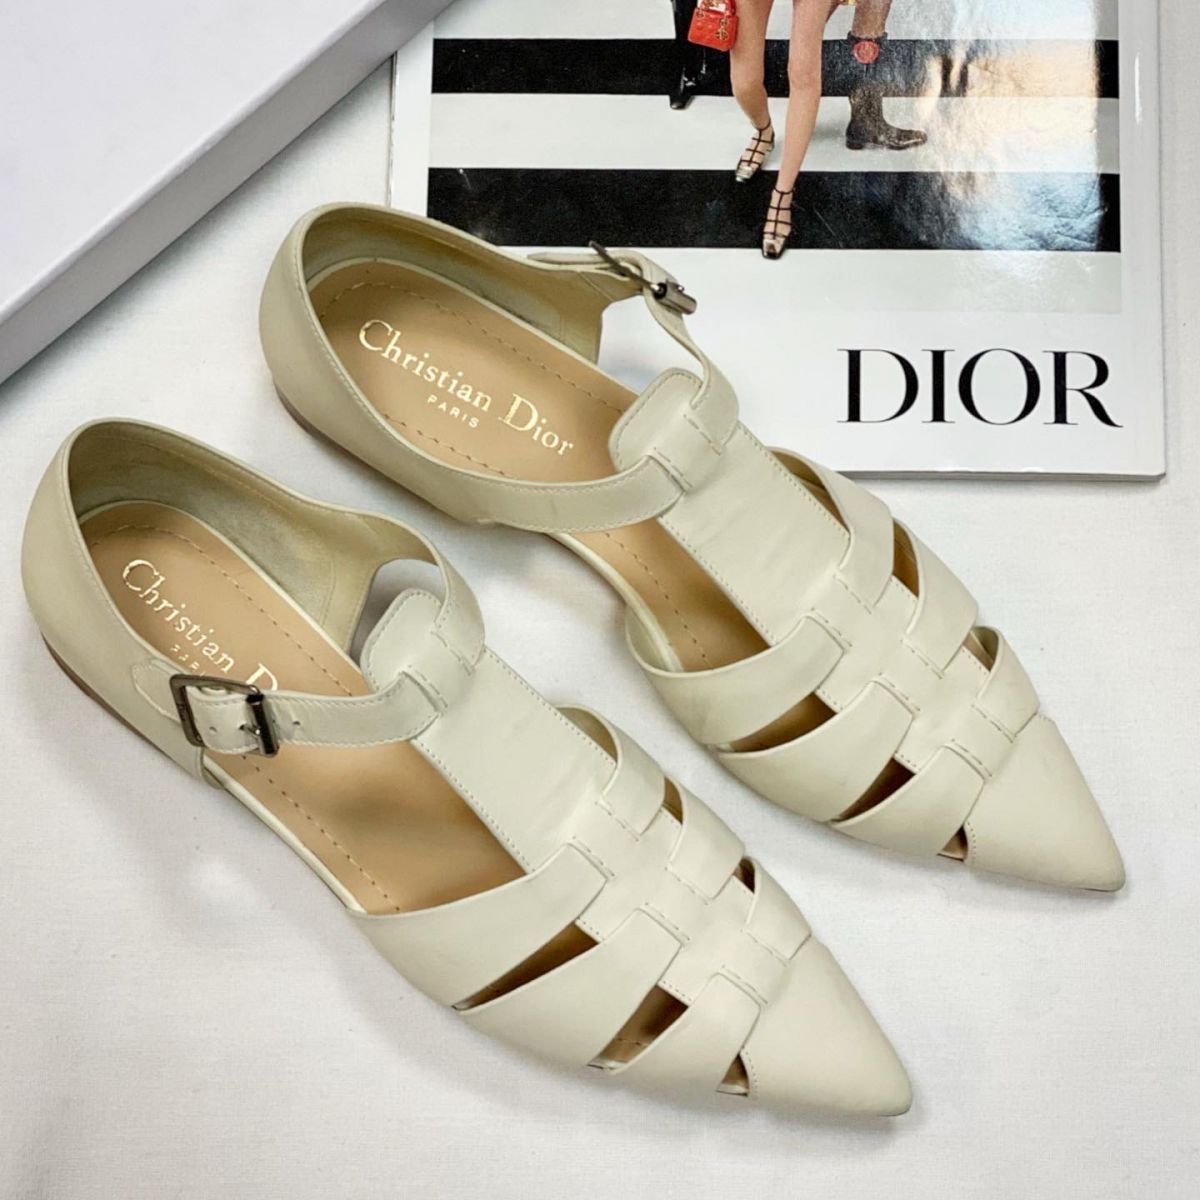 Туфли Christian Dior размер 36 цена 46 155 руб / новые / 